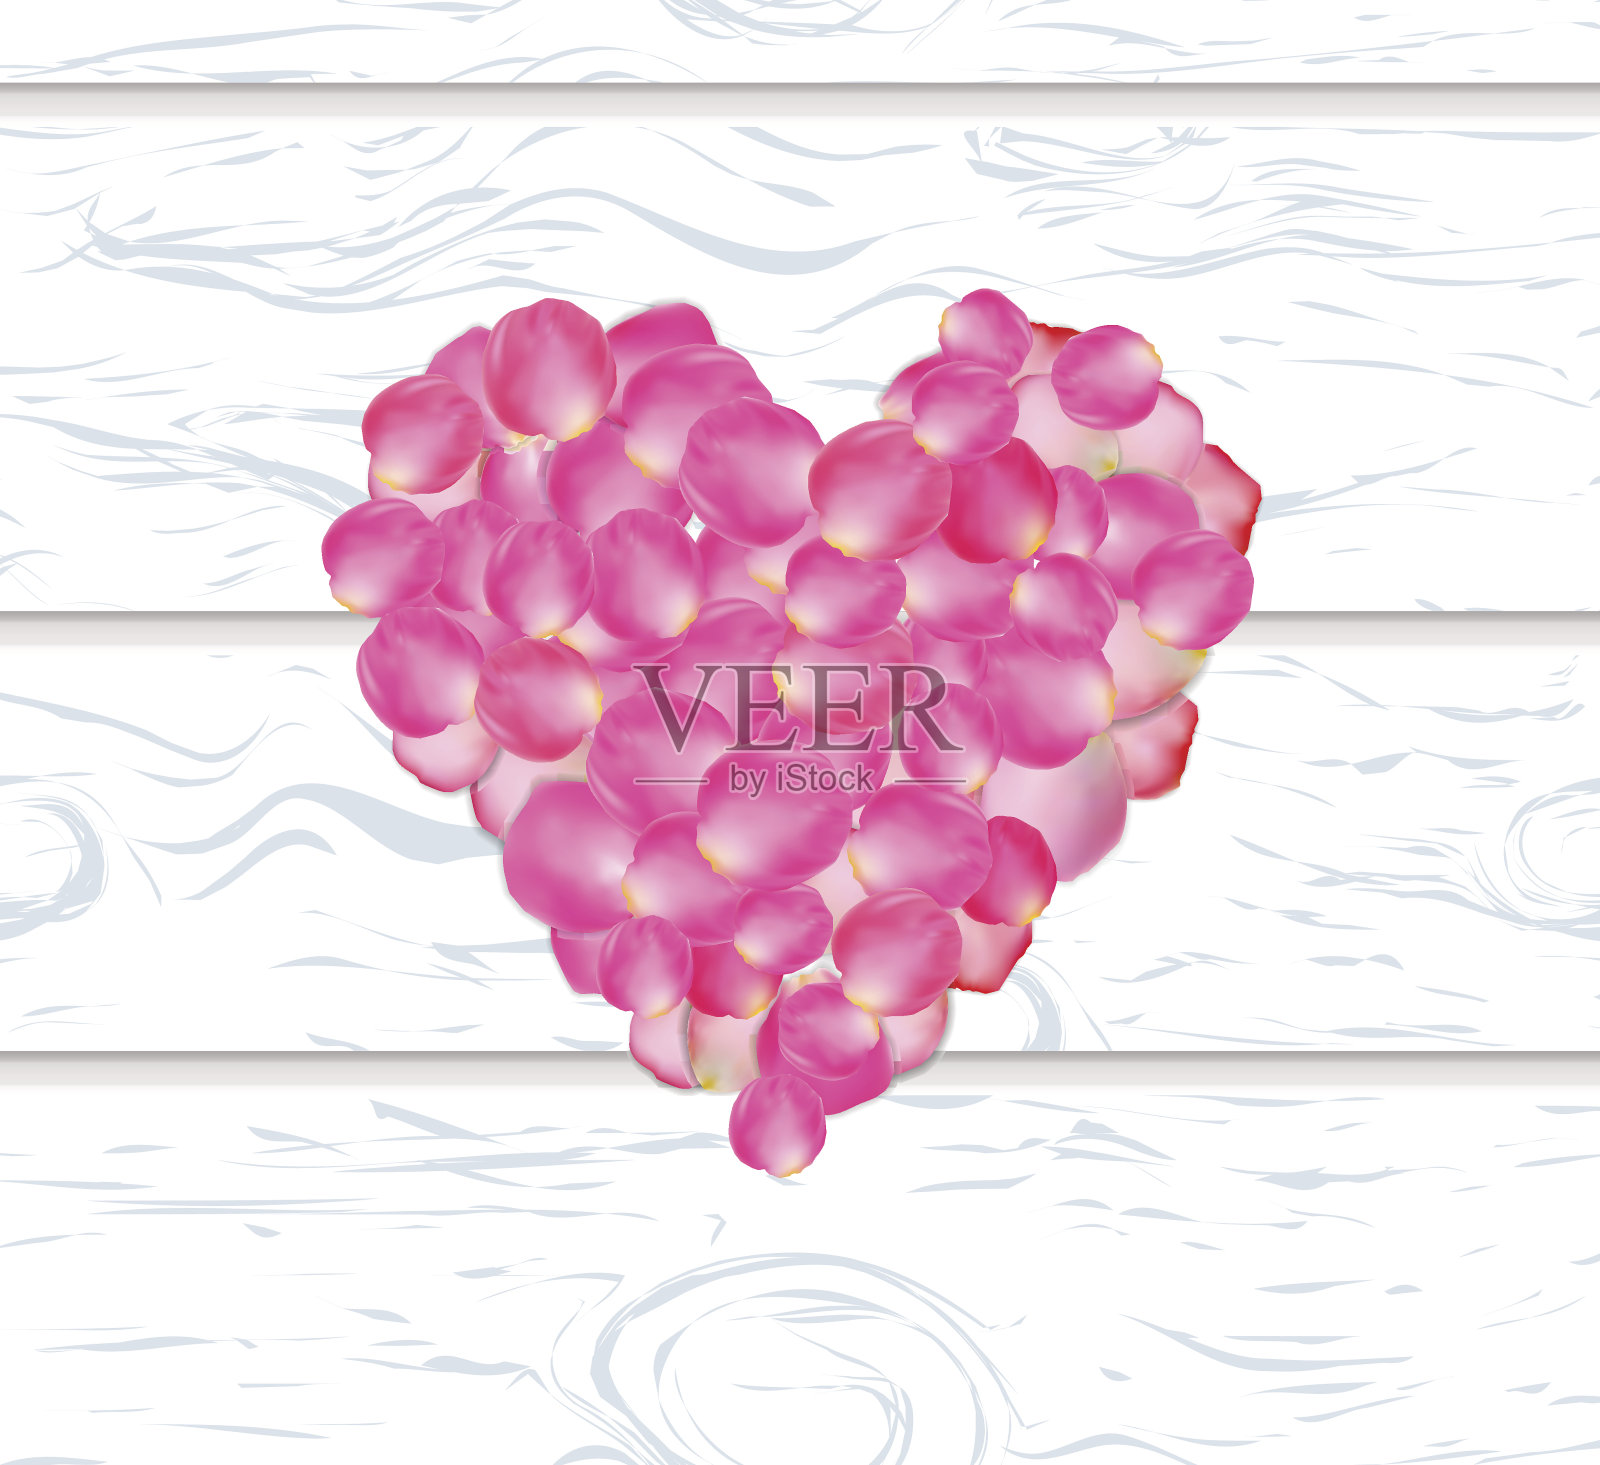 一张粉红色玫瑰花瓣心的情人节卡片插画图片素材